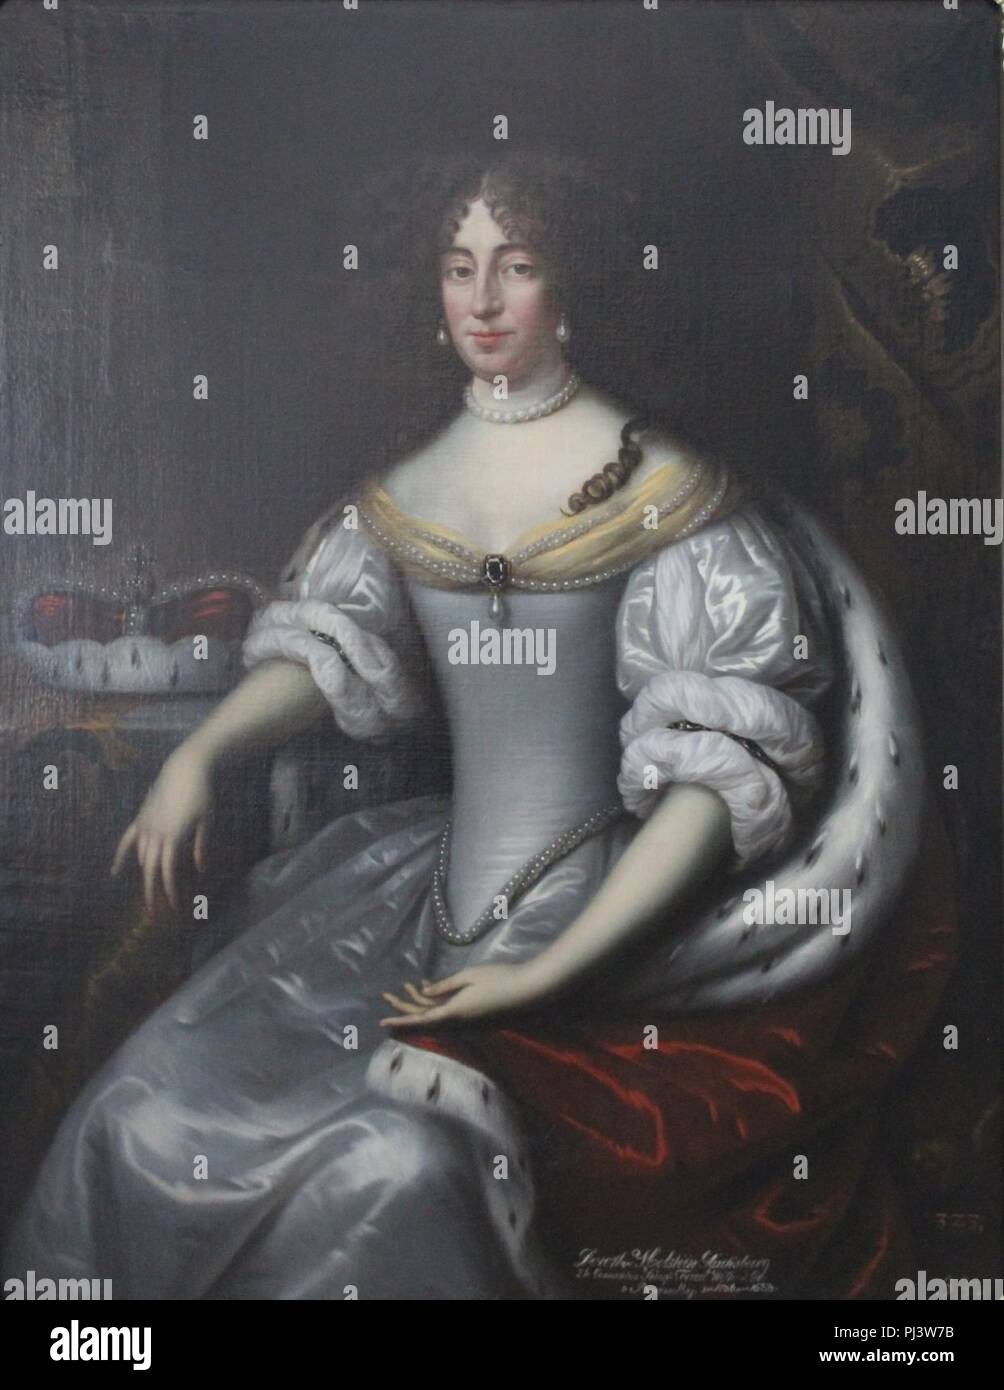 Baen, Jean de - Kurfürstin Dorothea Sophie von Schleswig-Holstein-Sonderburg-Glücksburg - Schloss Caputh. Stock Photo